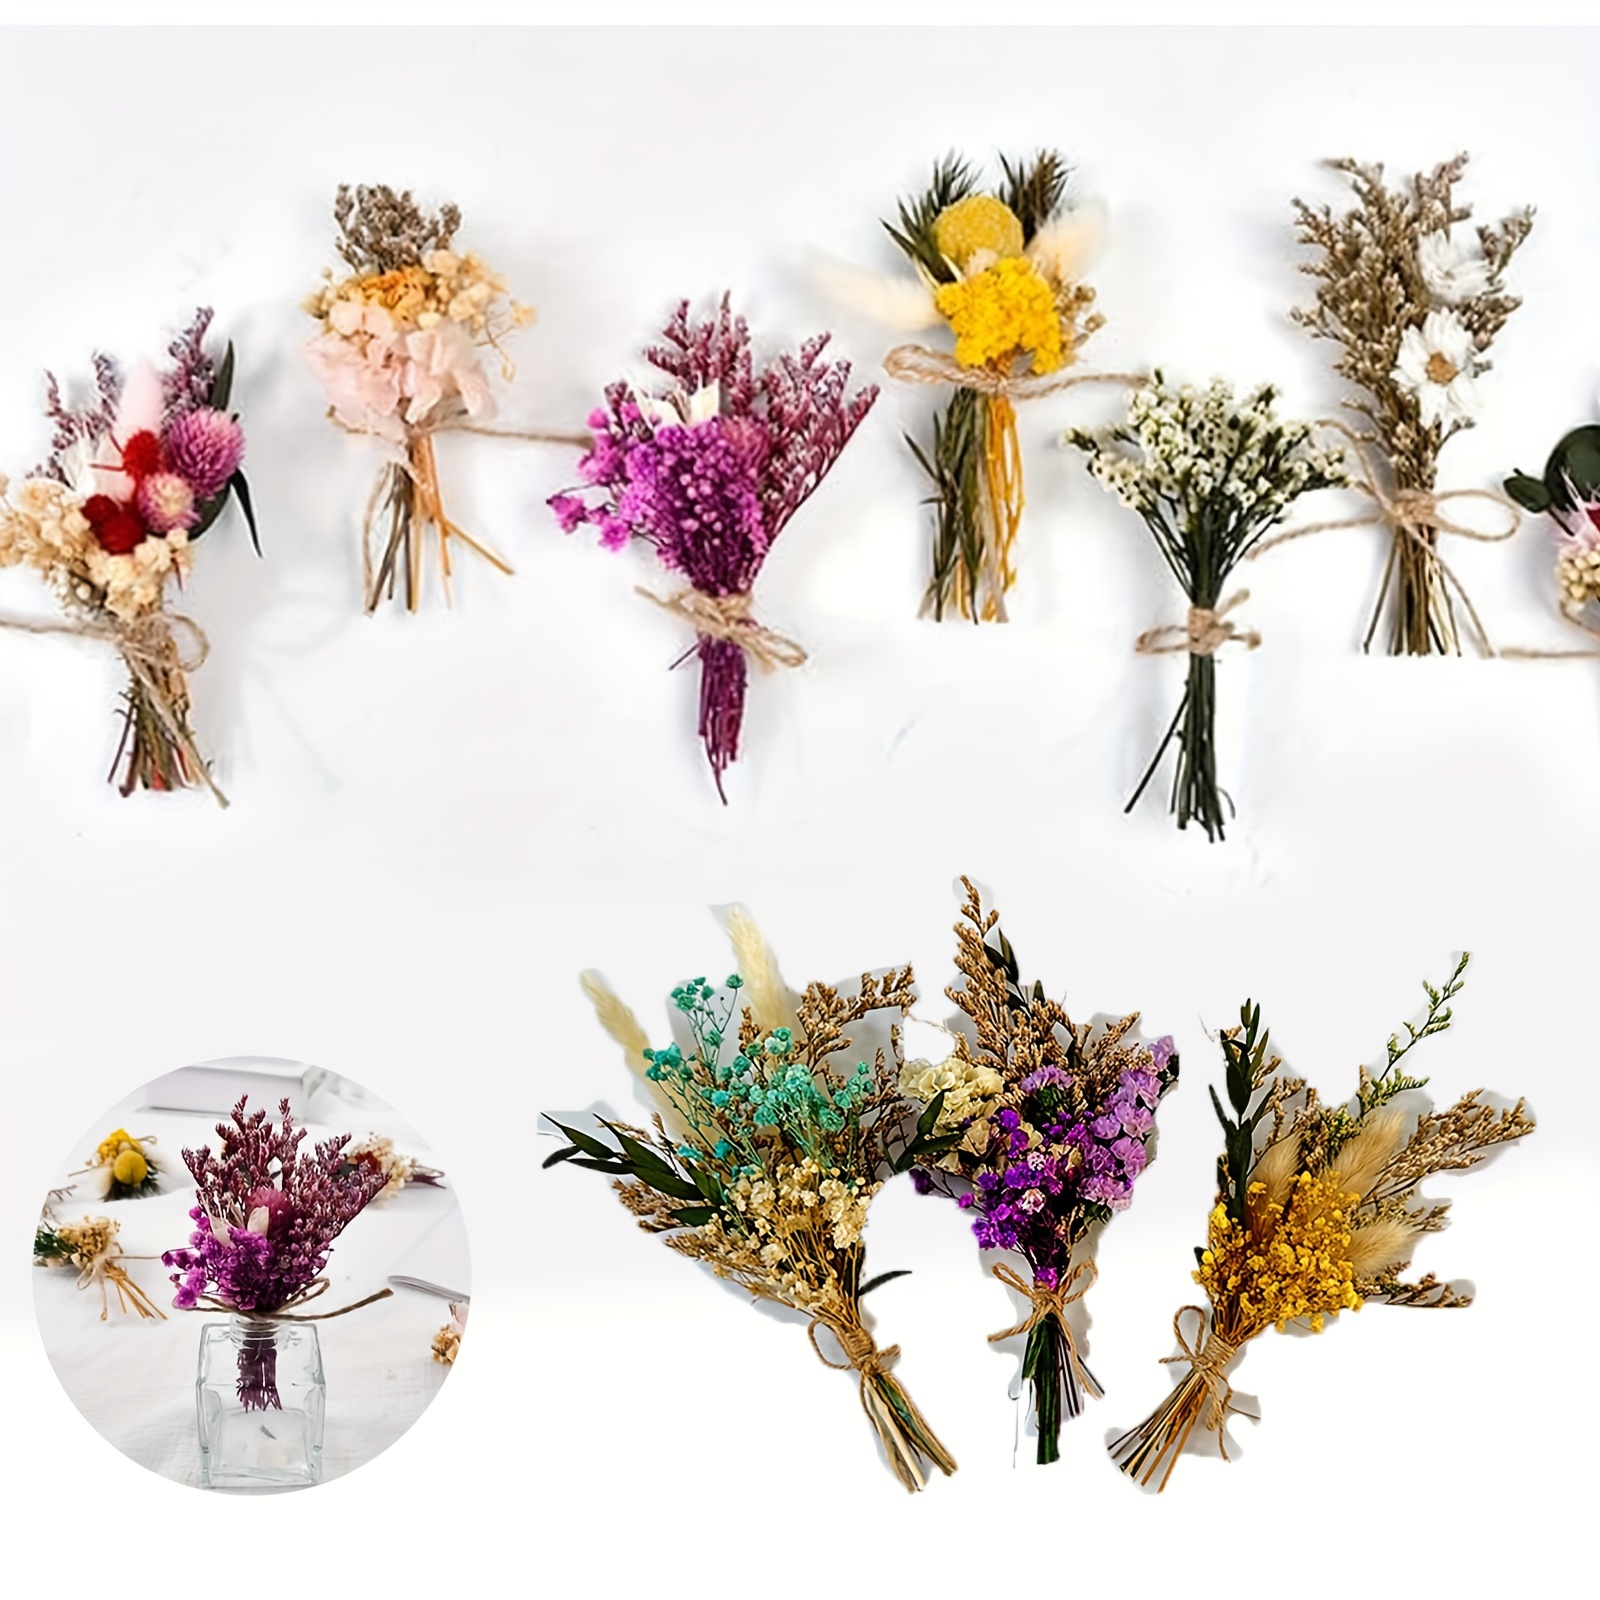 jeerbly 40 mini ramos de flores secas, 4 cajas de flores y hojas secas  naturales para manualidades, accesorios de fotos, paquetes de flores secas  en